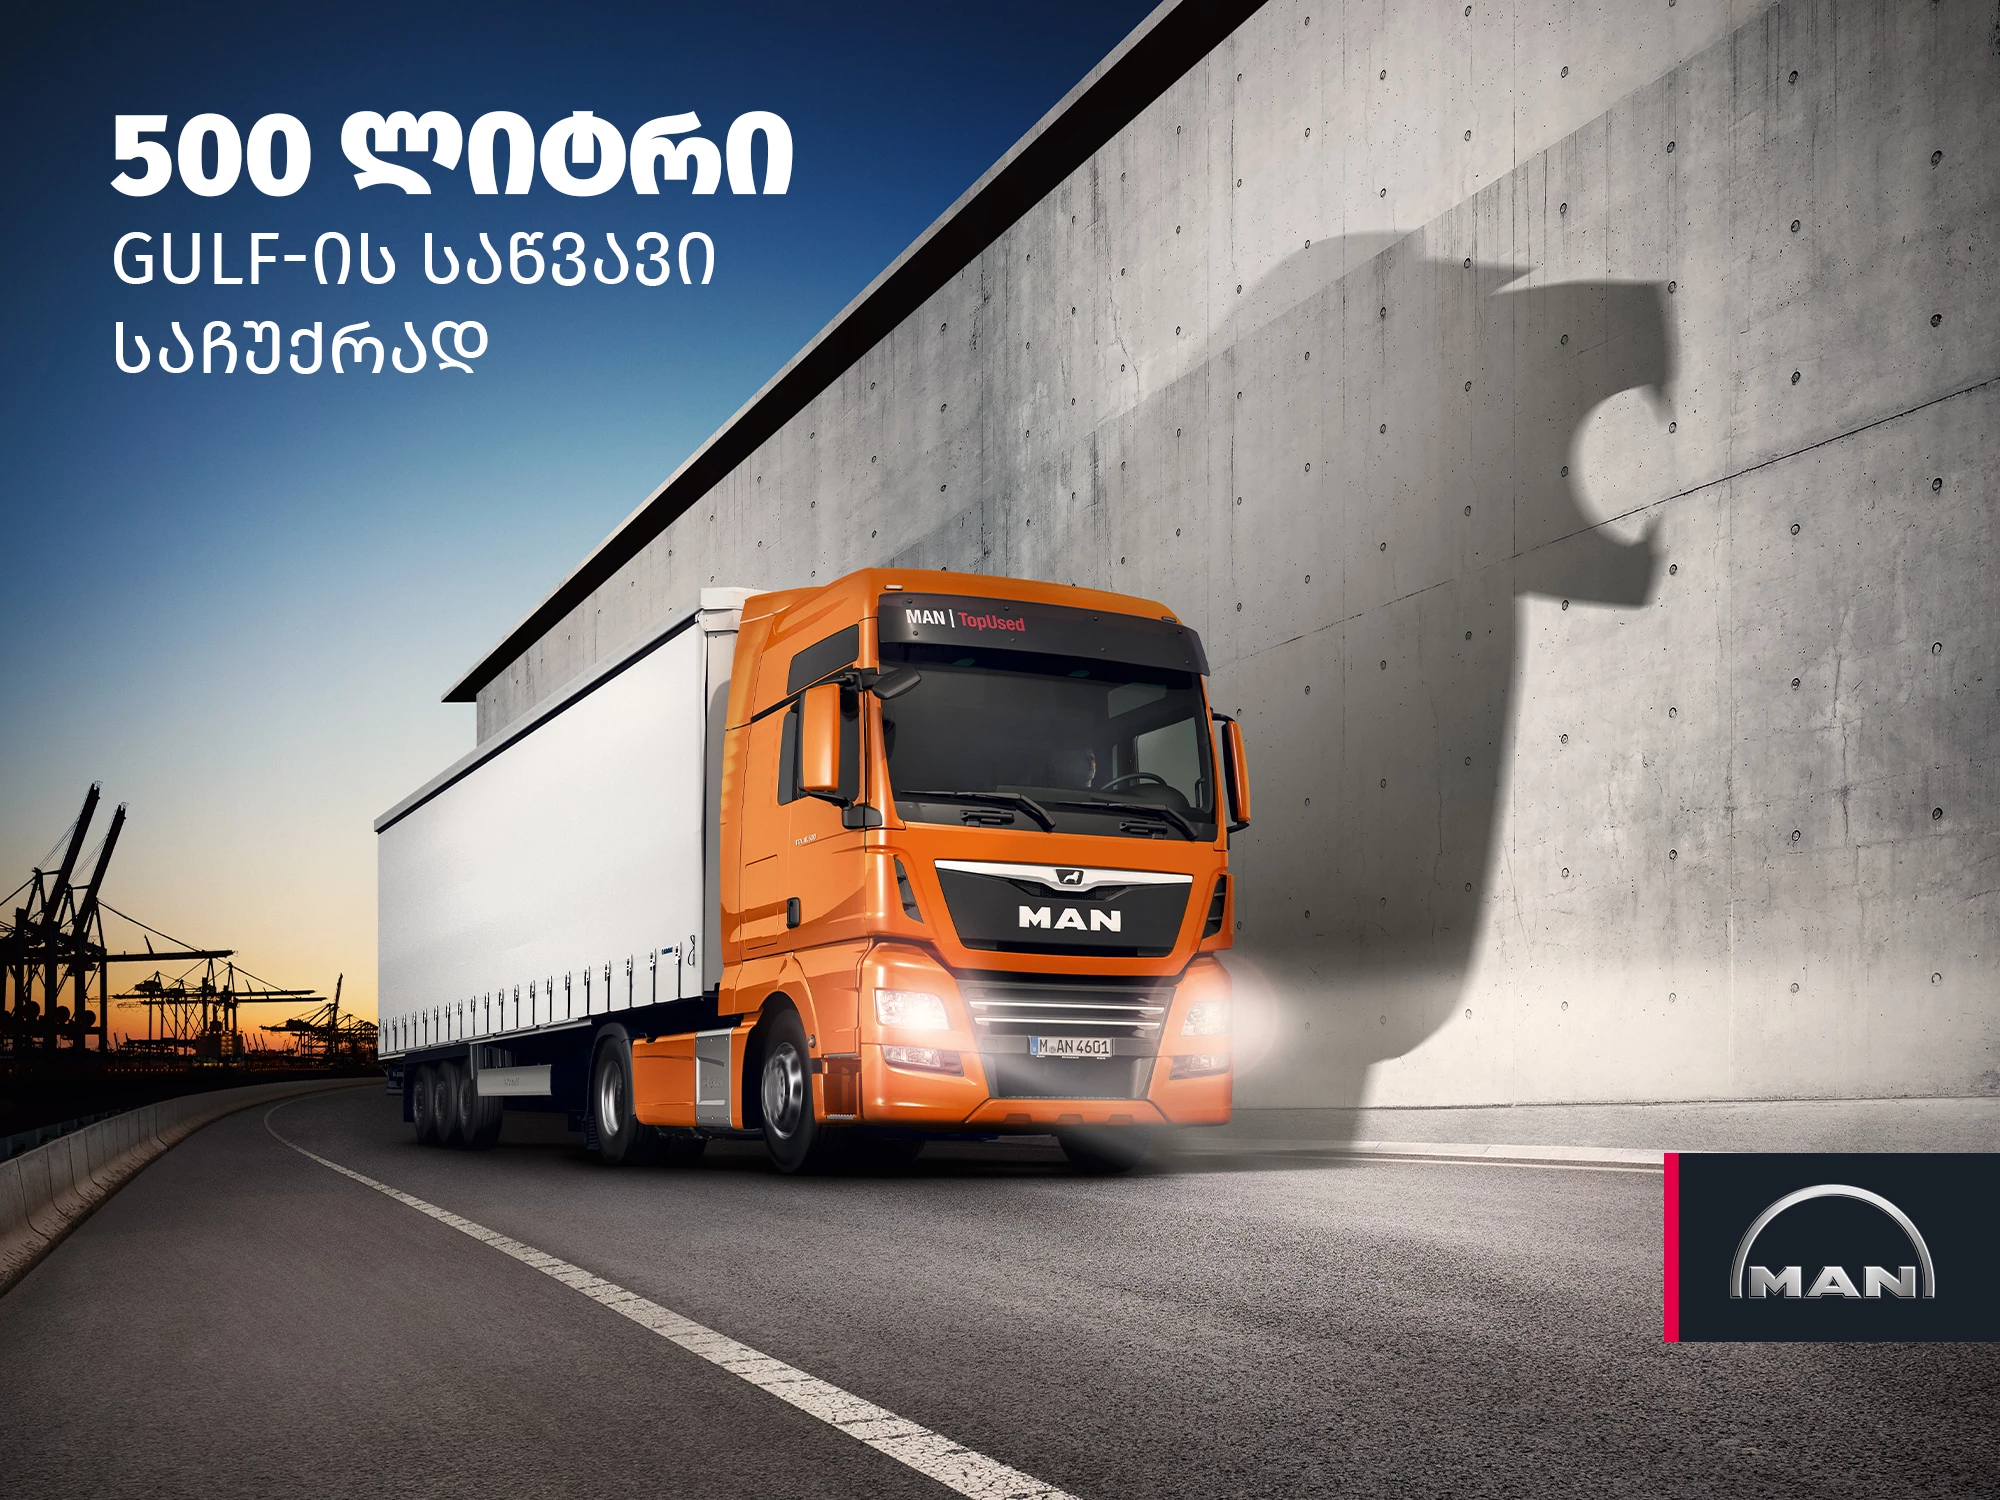 Купите подержанный грузовик MAN Topused с гарантией и получите в подарок 500 литров евро дизеля от Gulf! Offer Image